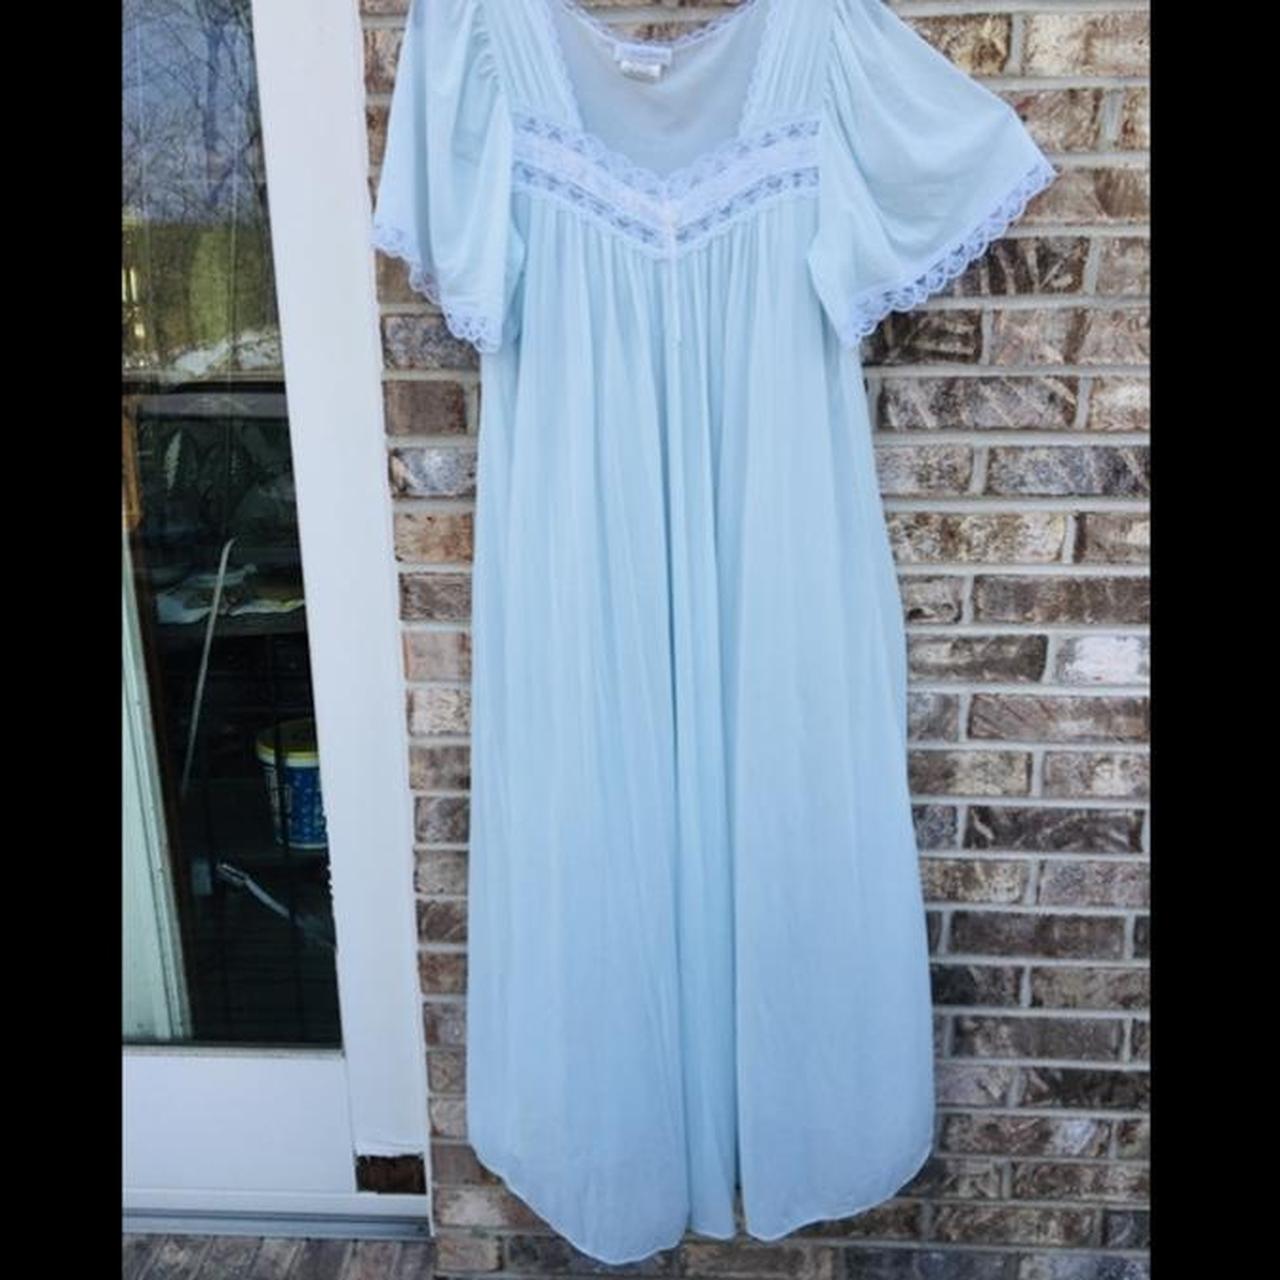 Pale Blue Prairie Cottagecore Nightgown Dress Size:... - Depop